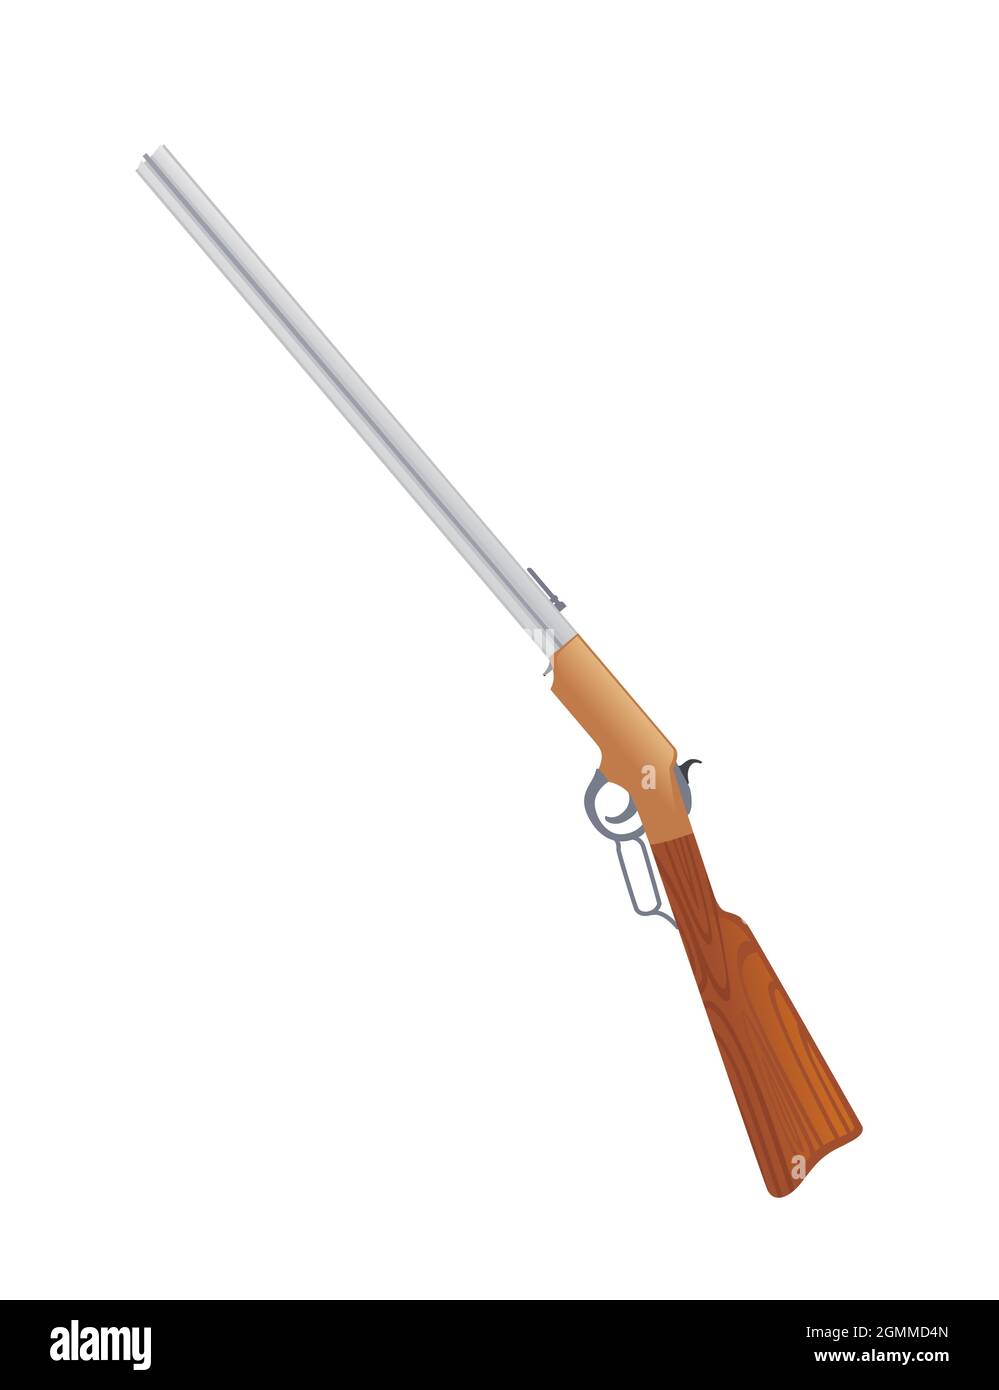 Hebel Gewehr Retro-Stil USA Waffe mit klassischem Design Vektor-Illustration auf weißem Hintergrund Stock Vektor